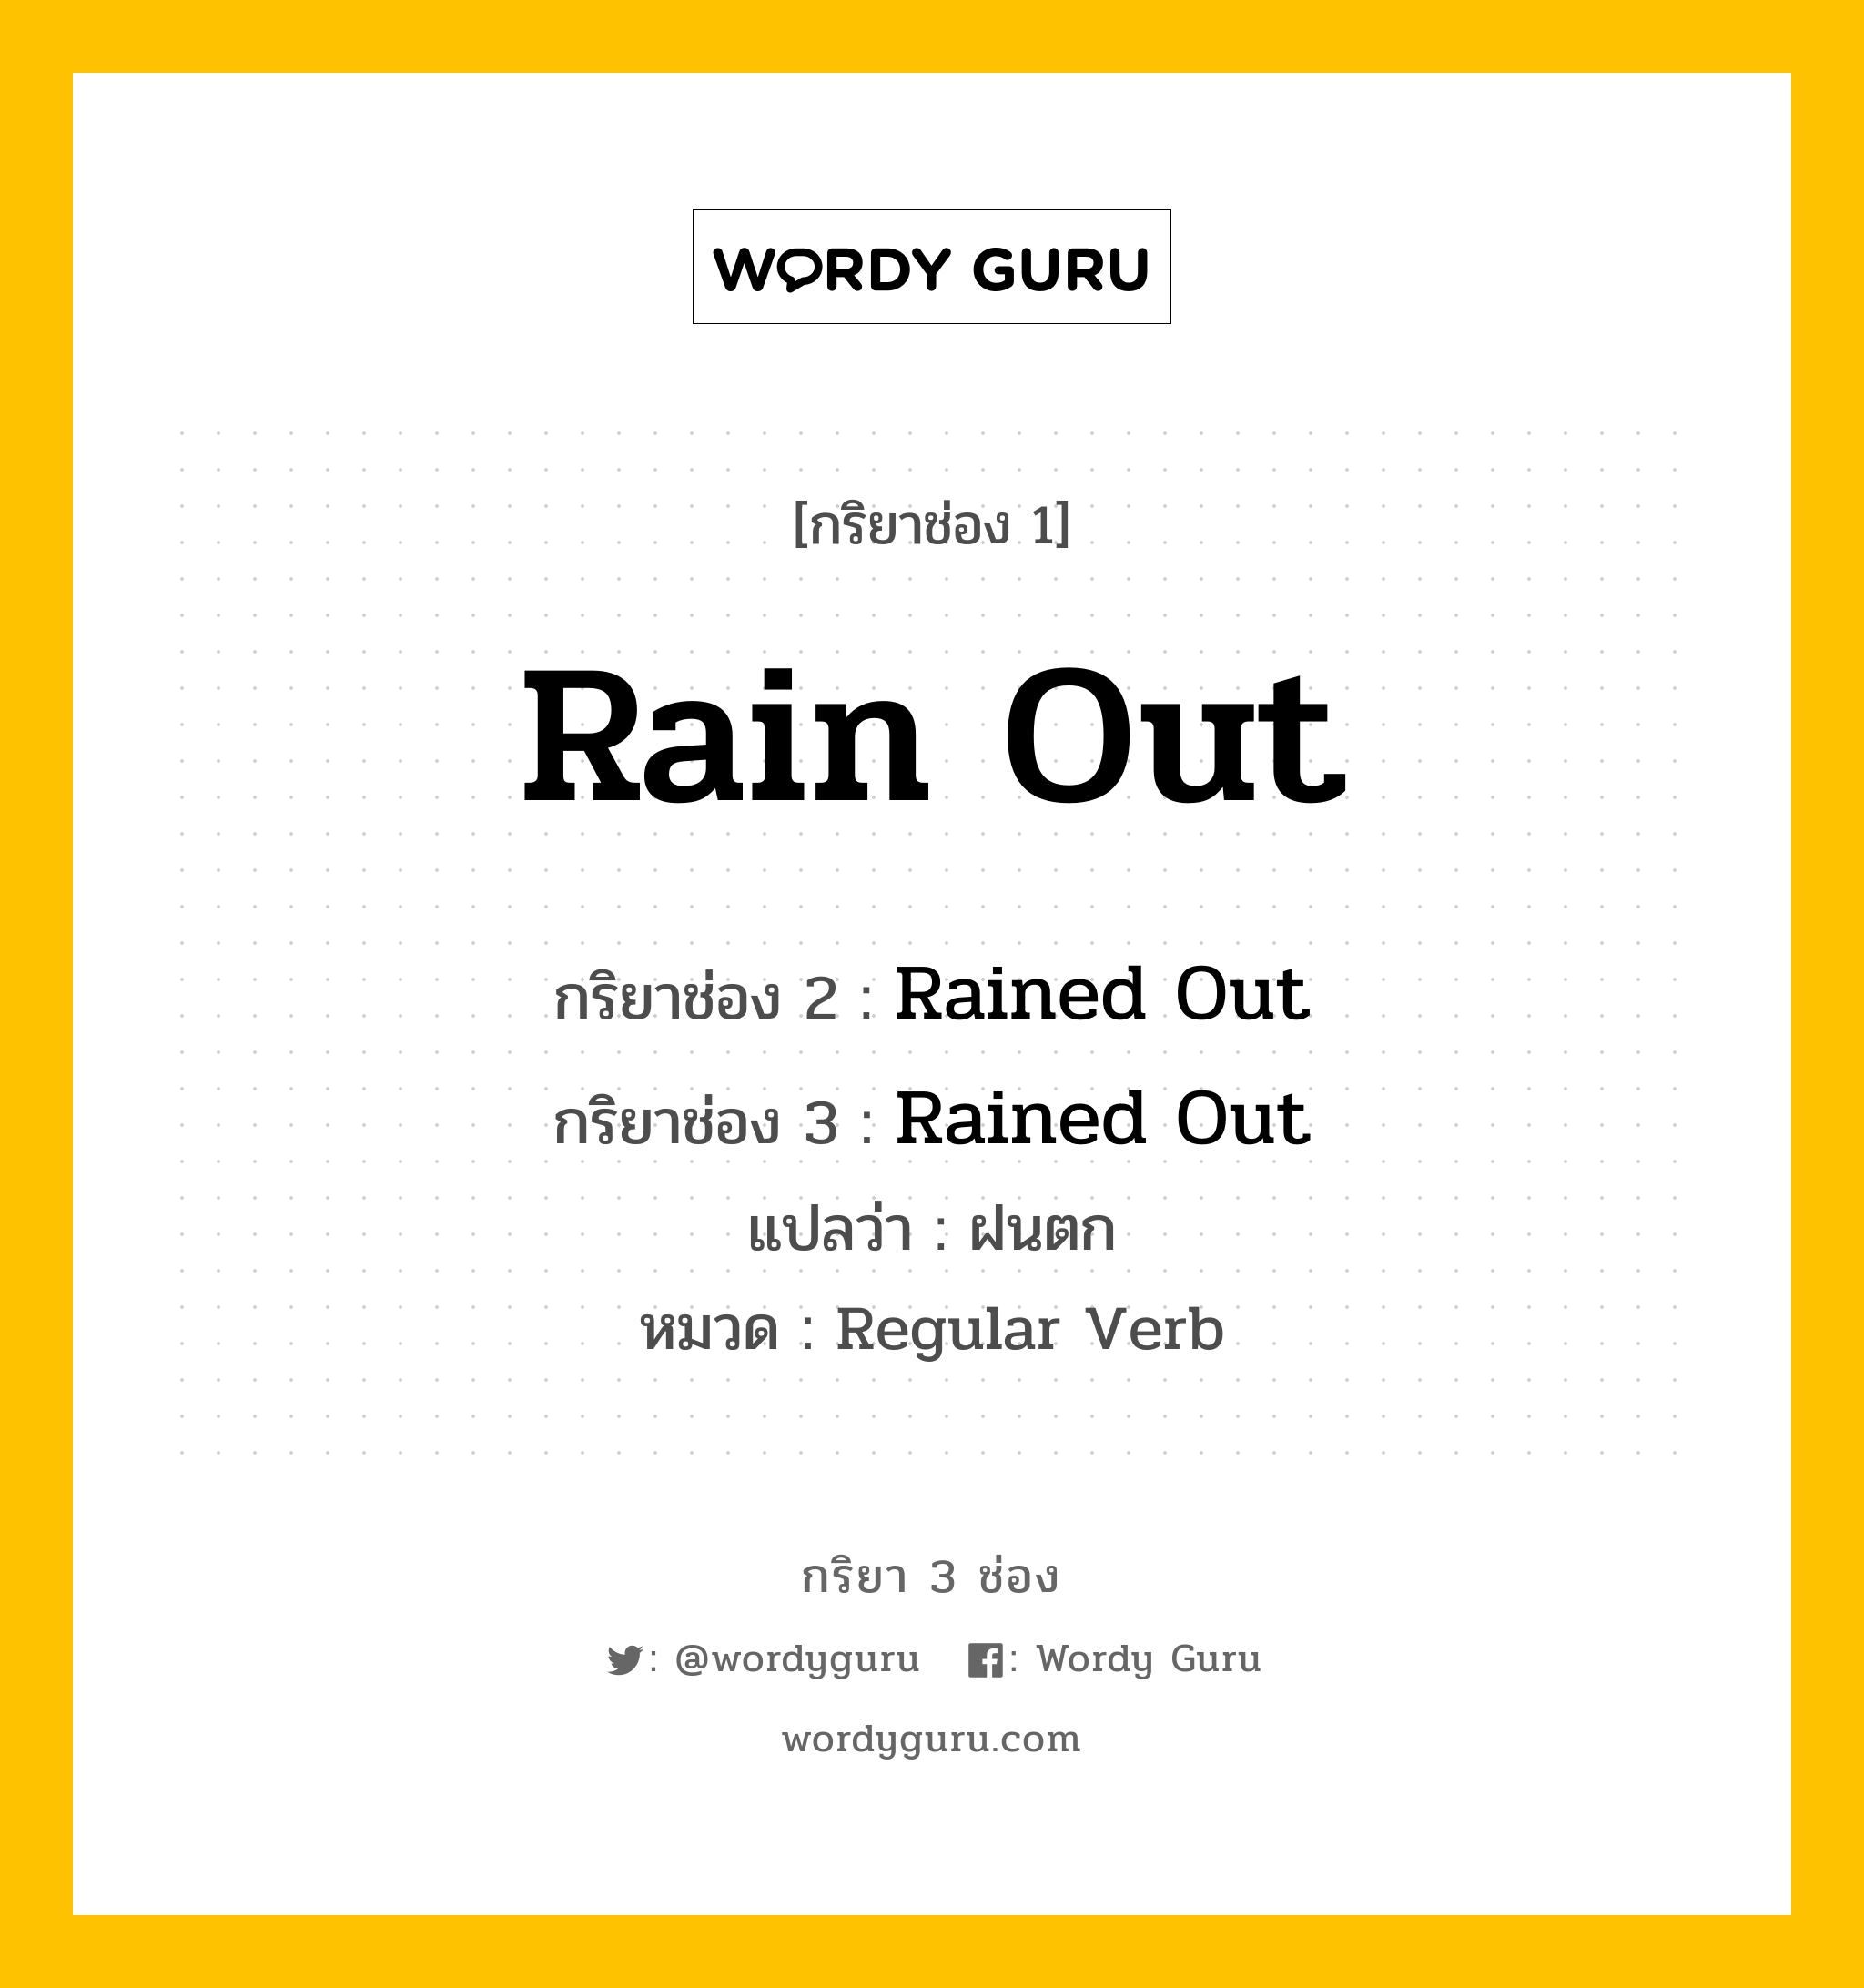 กริยา 3 ช่อง: Rain Out ช่อง 2 Rain Out ช่อง 3 คืออะไร, กริยาช่อง 1 Rain Out กริยาช่อง 2 Rained Out กริยาช่อง 3 Rained Out แปลว่า ฝนตก หมวด Regular Verb หมวด Regular Verb